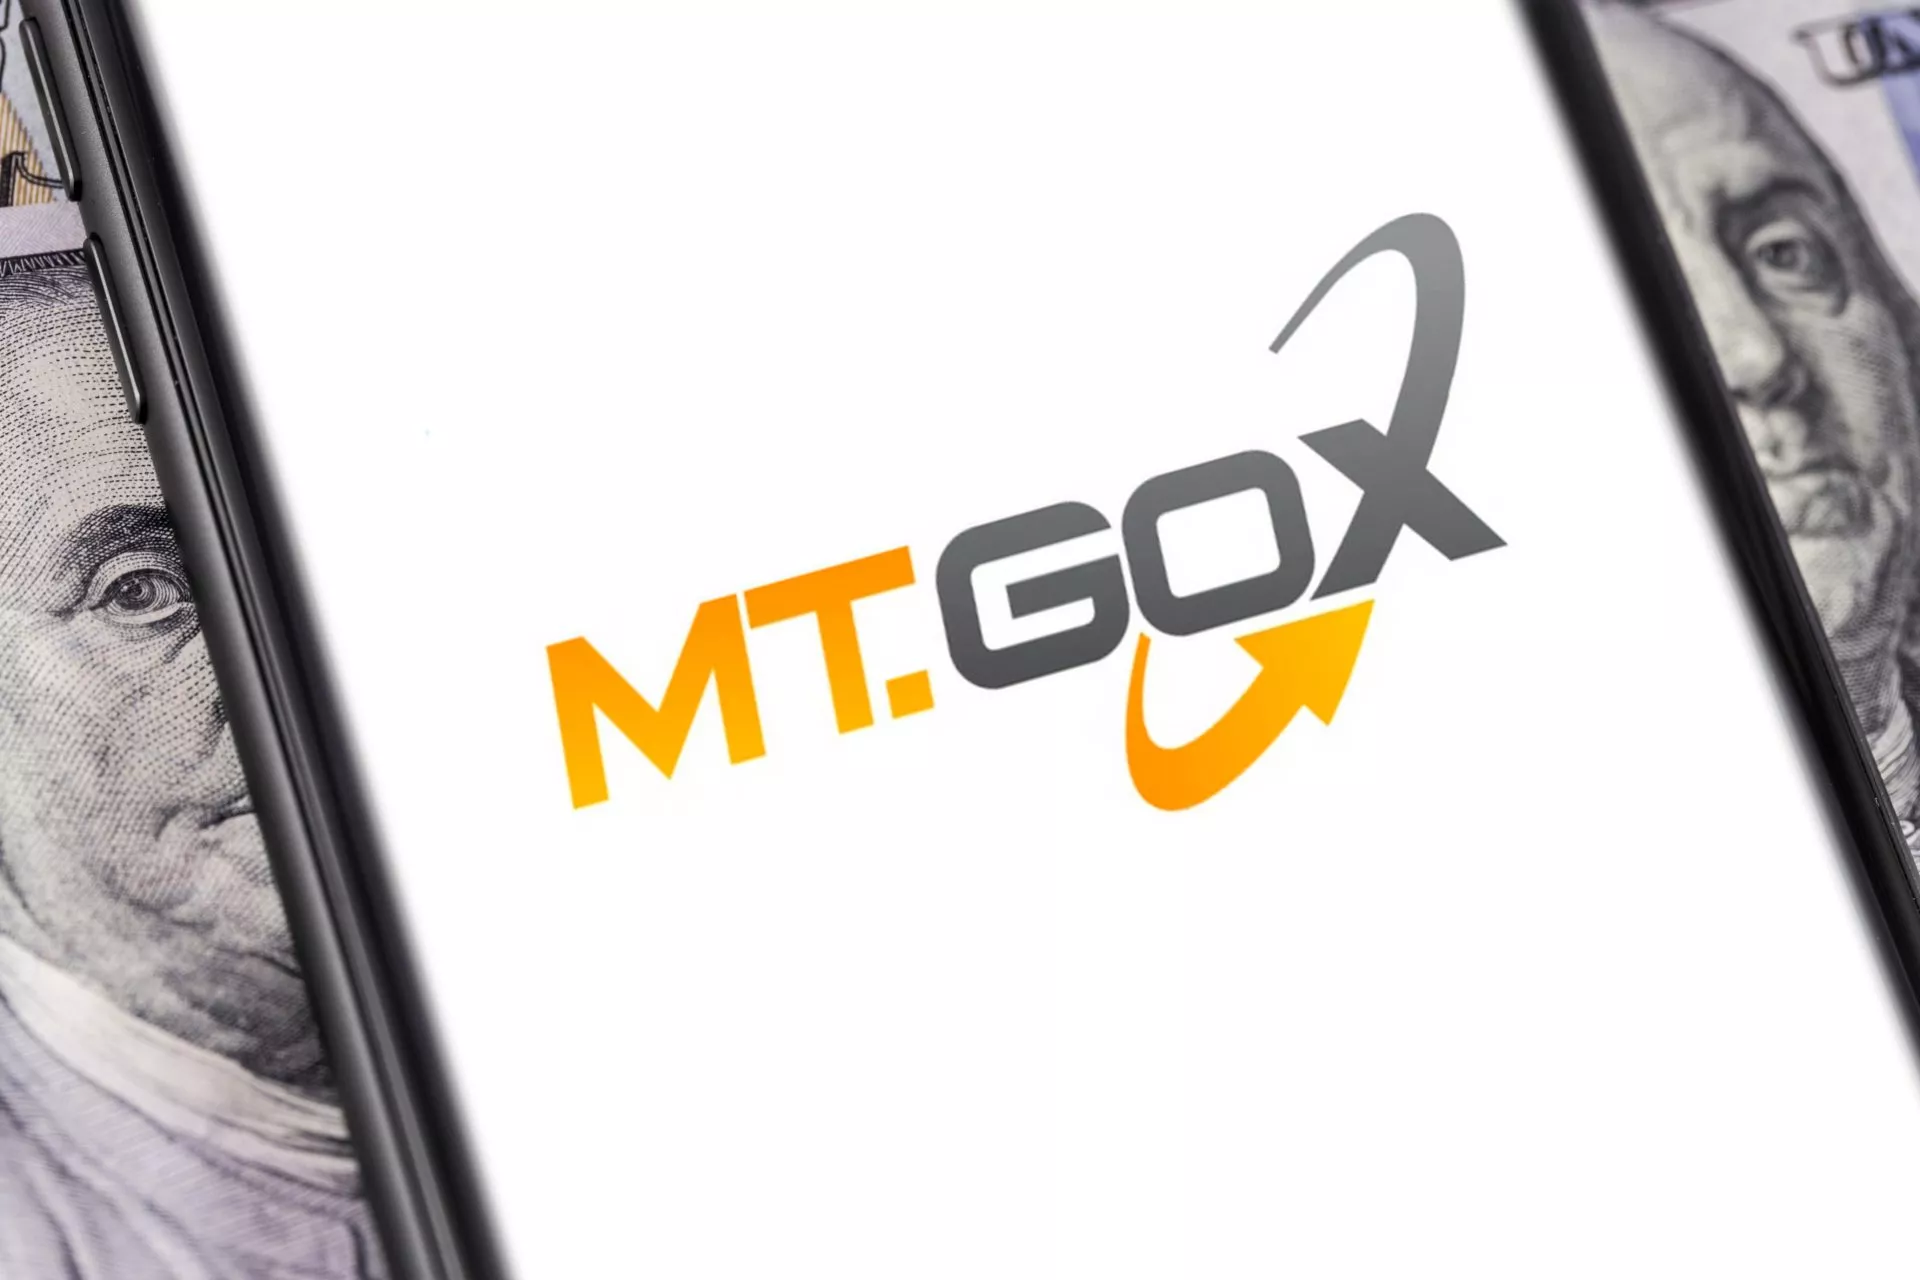 MT.gox Logo